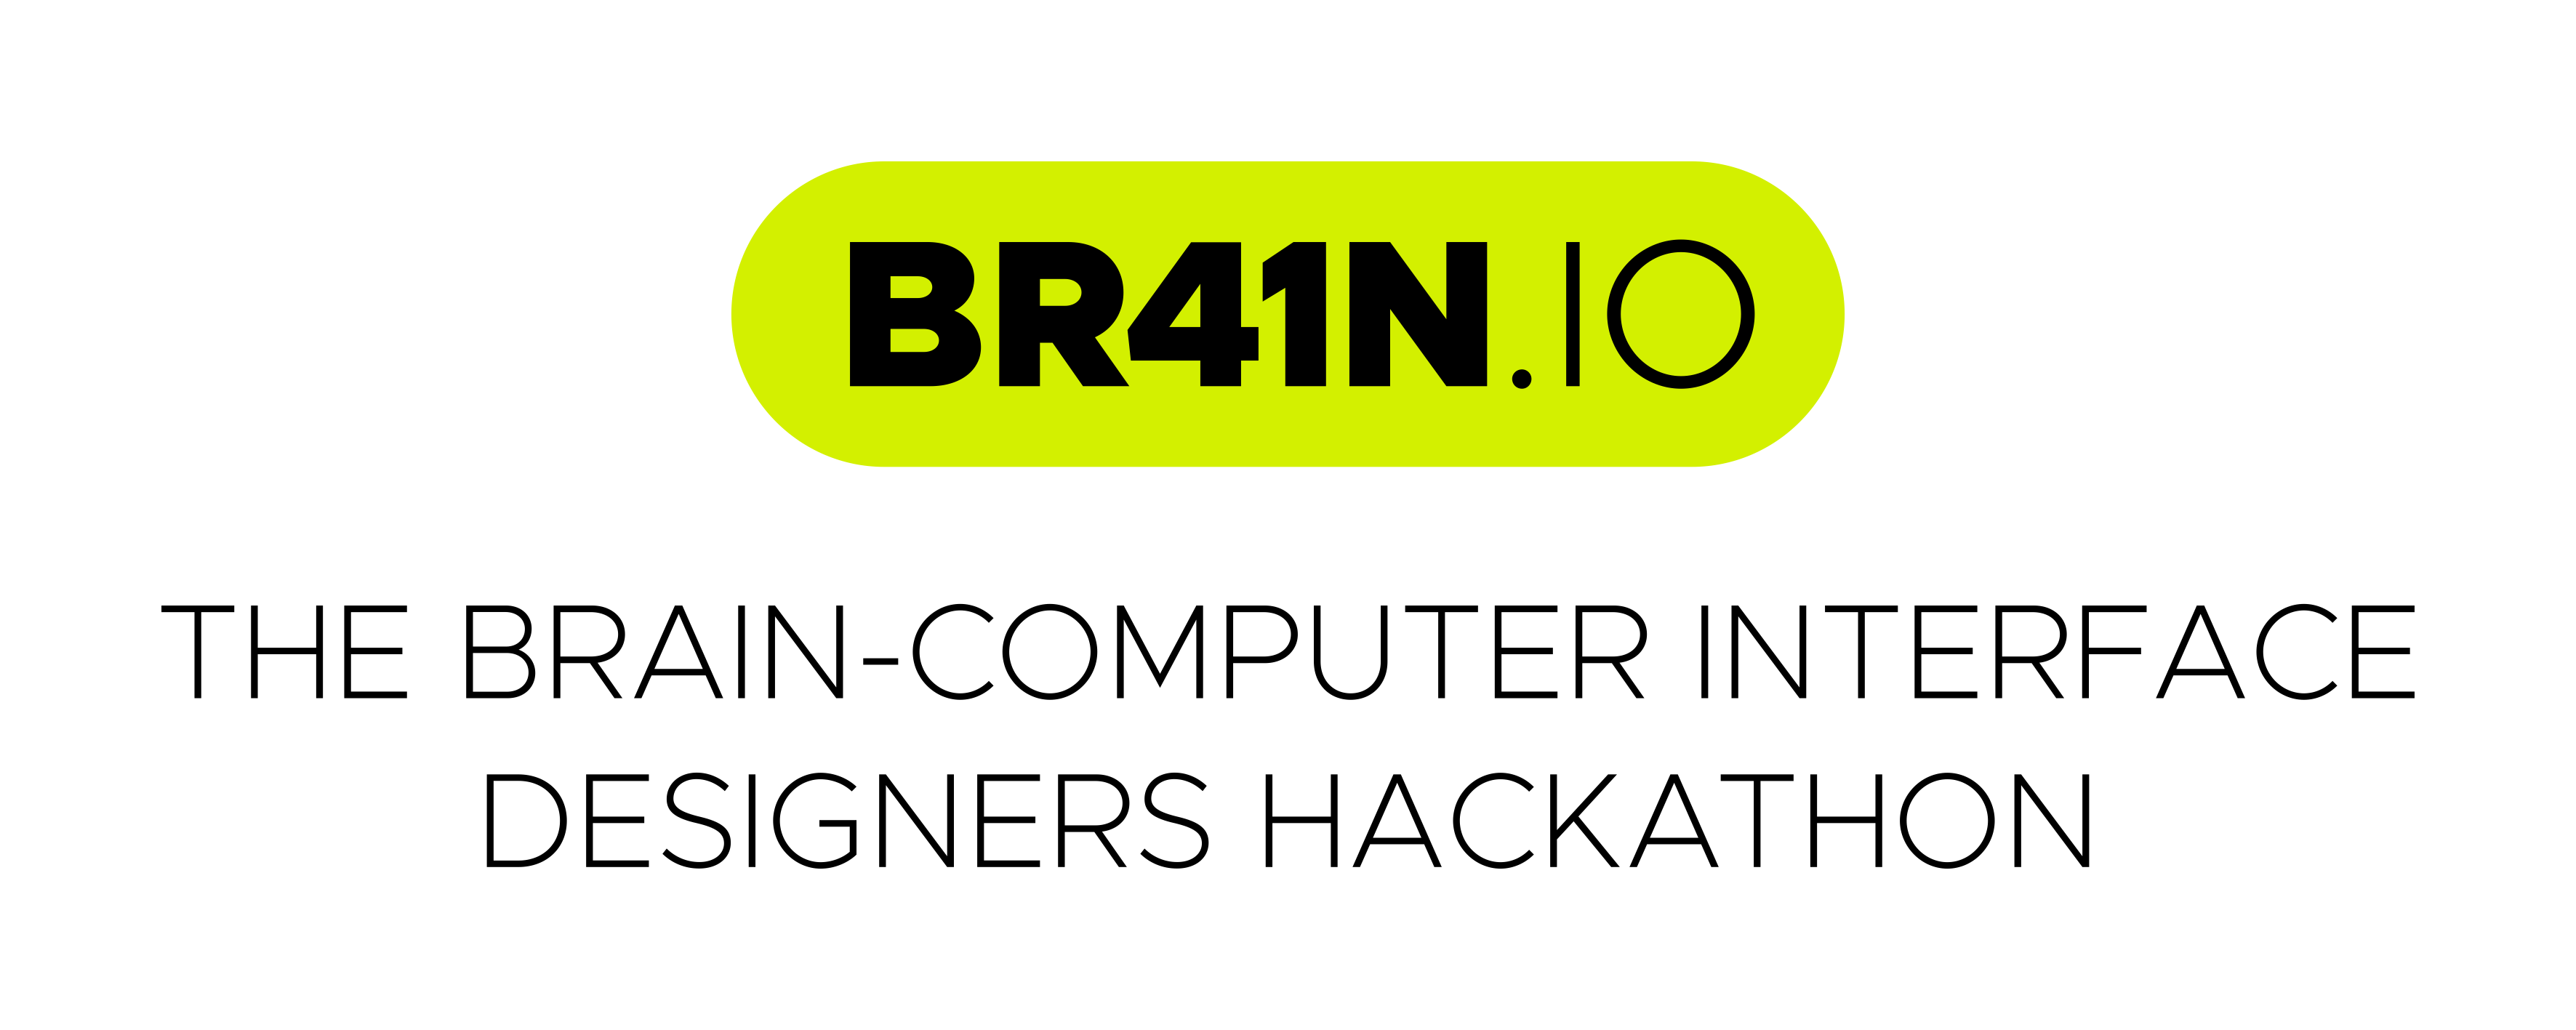 BR41N-IO